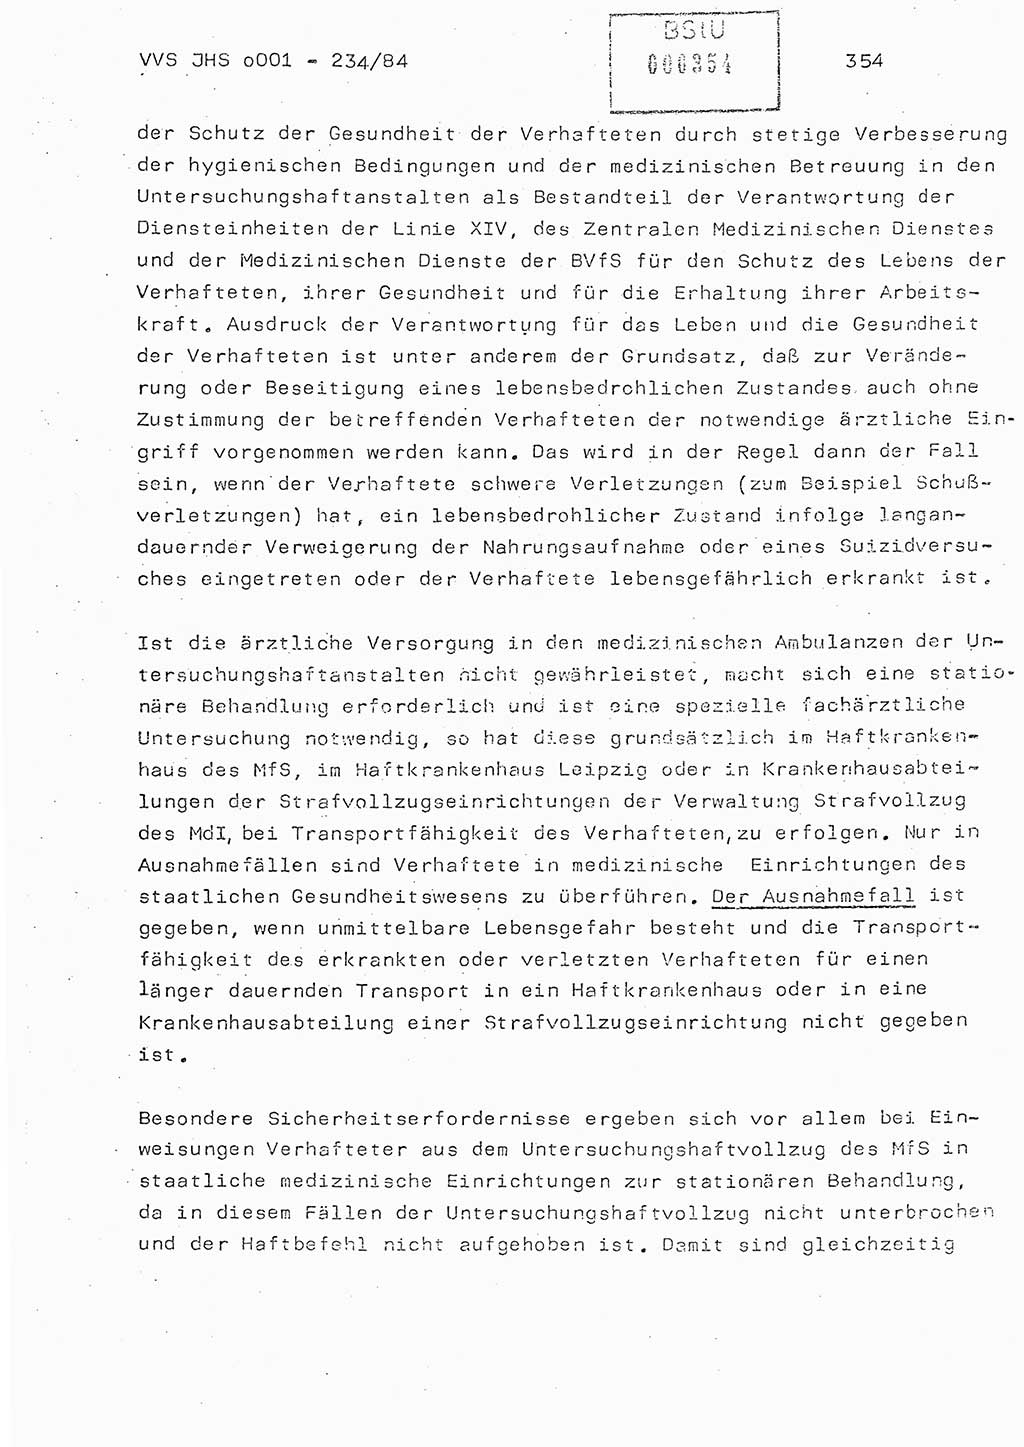 Dissertation Oberst Siegfried Rataizick (Abt. ⅩⅣ), Oberstleutnant Volkmar Heinz (Abt. ⅩⅣ), Oberstleutnant Werner Stein (HA Ⅸ), Hauptmann Heinz Conrad (JHS), Ministerium für Staatssicherheit (MfS) [Deutsche Demokratische Republik (DDR)], Juristische Hochschule (JHS), Vertrauliche Verschlußsache (VVS) o001-234/84, Potsdam 1984, Seite 354 (Diss. MfS DDR JHS VVS o001-234/84 1984, S. 354)